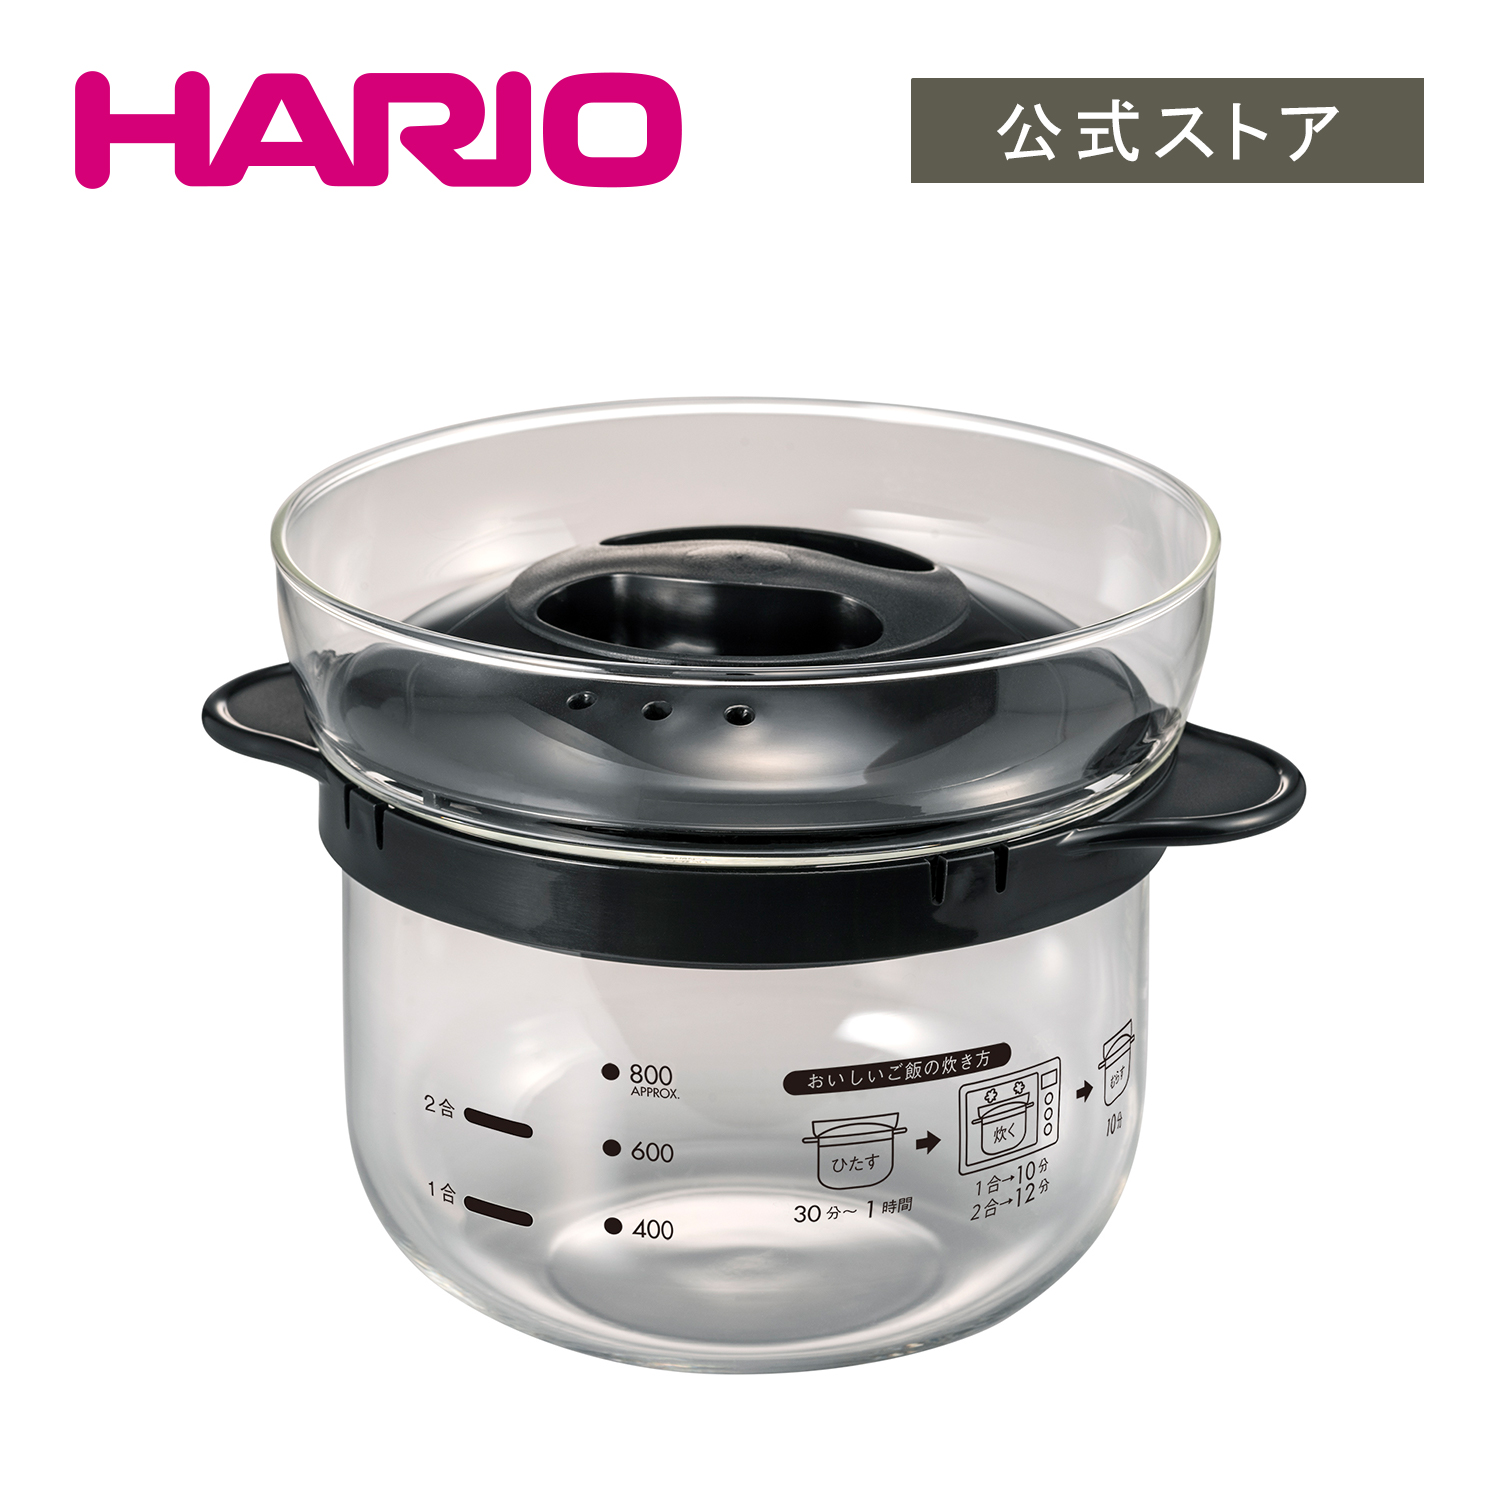 【楽天市場】【公式ショップ】HARIO ハリオ ガラスのレンジご飯釜